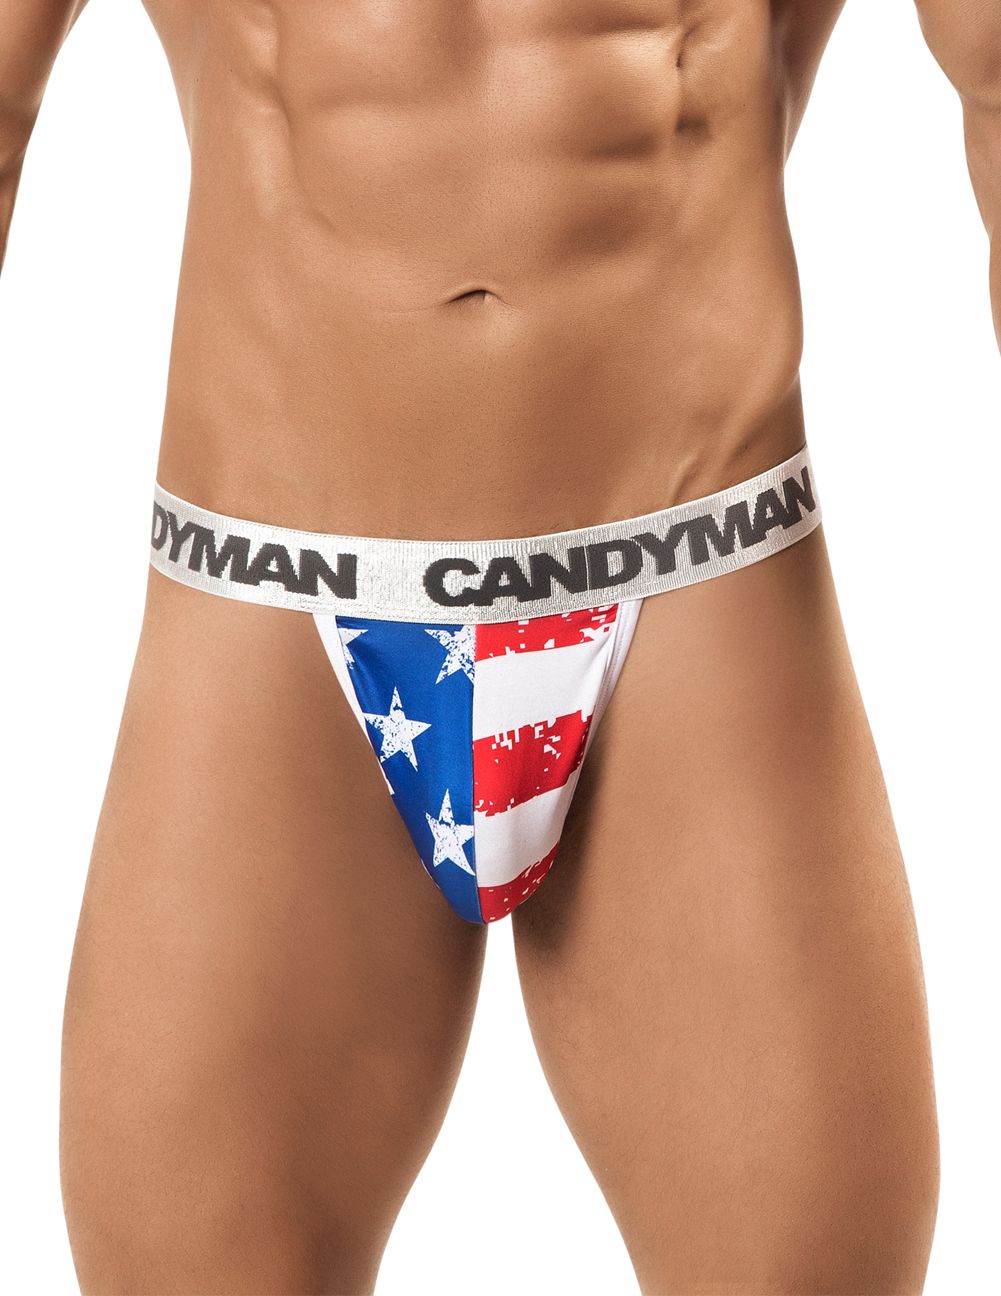 CandyMan Patriotic Thong